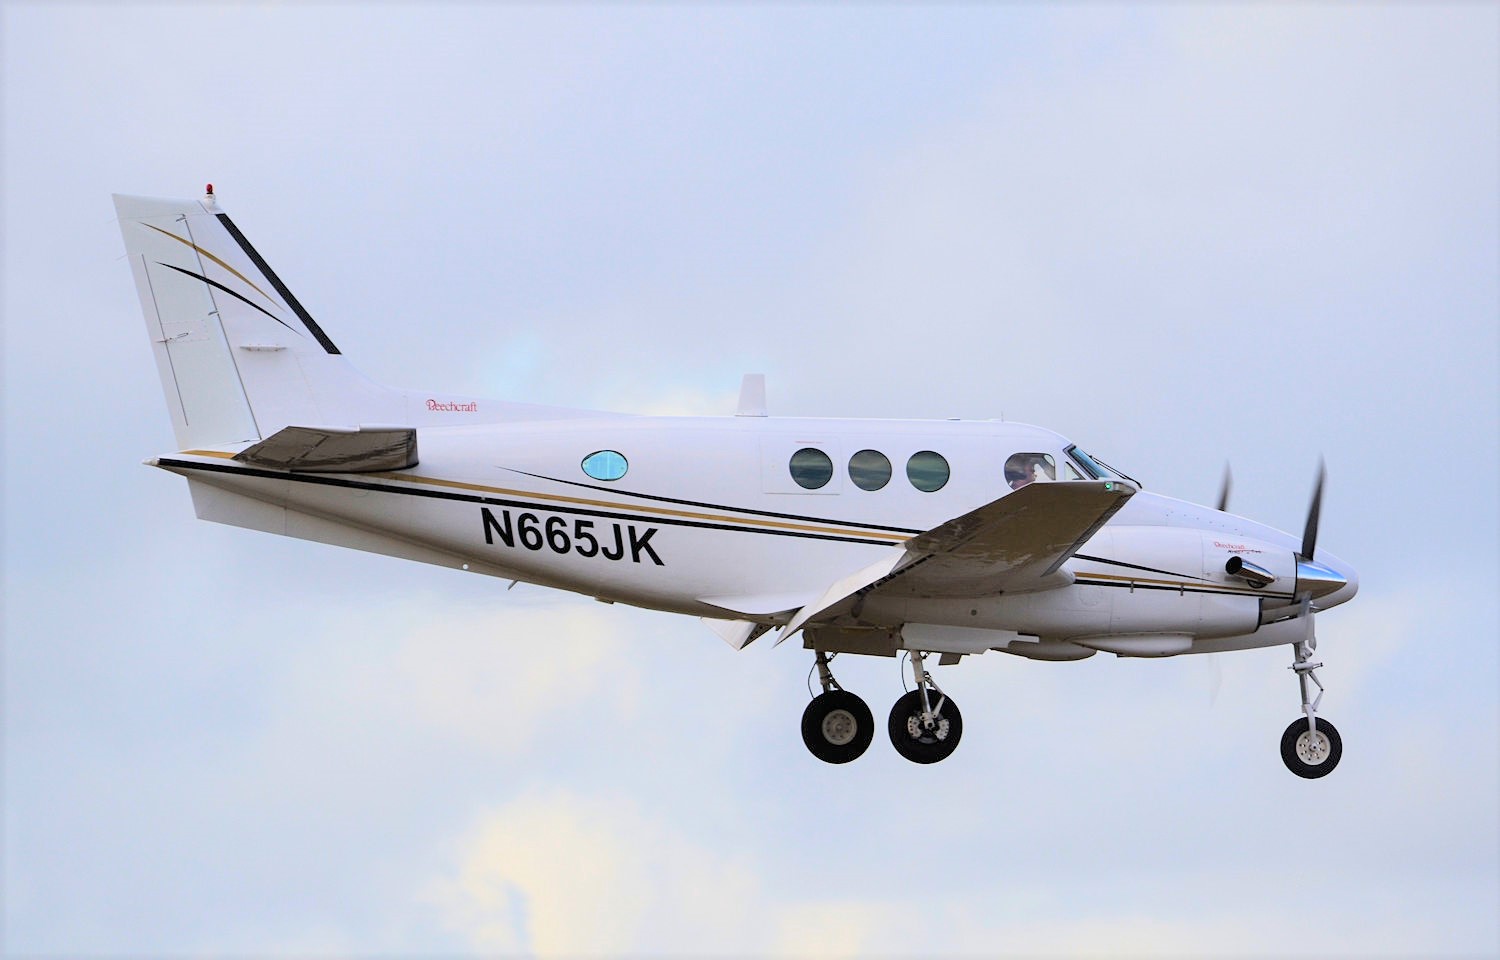 N665JK/N665JK Sky Aviation Holdings LLC Beechcraft King Air Airframe Information - AVSpotters.com